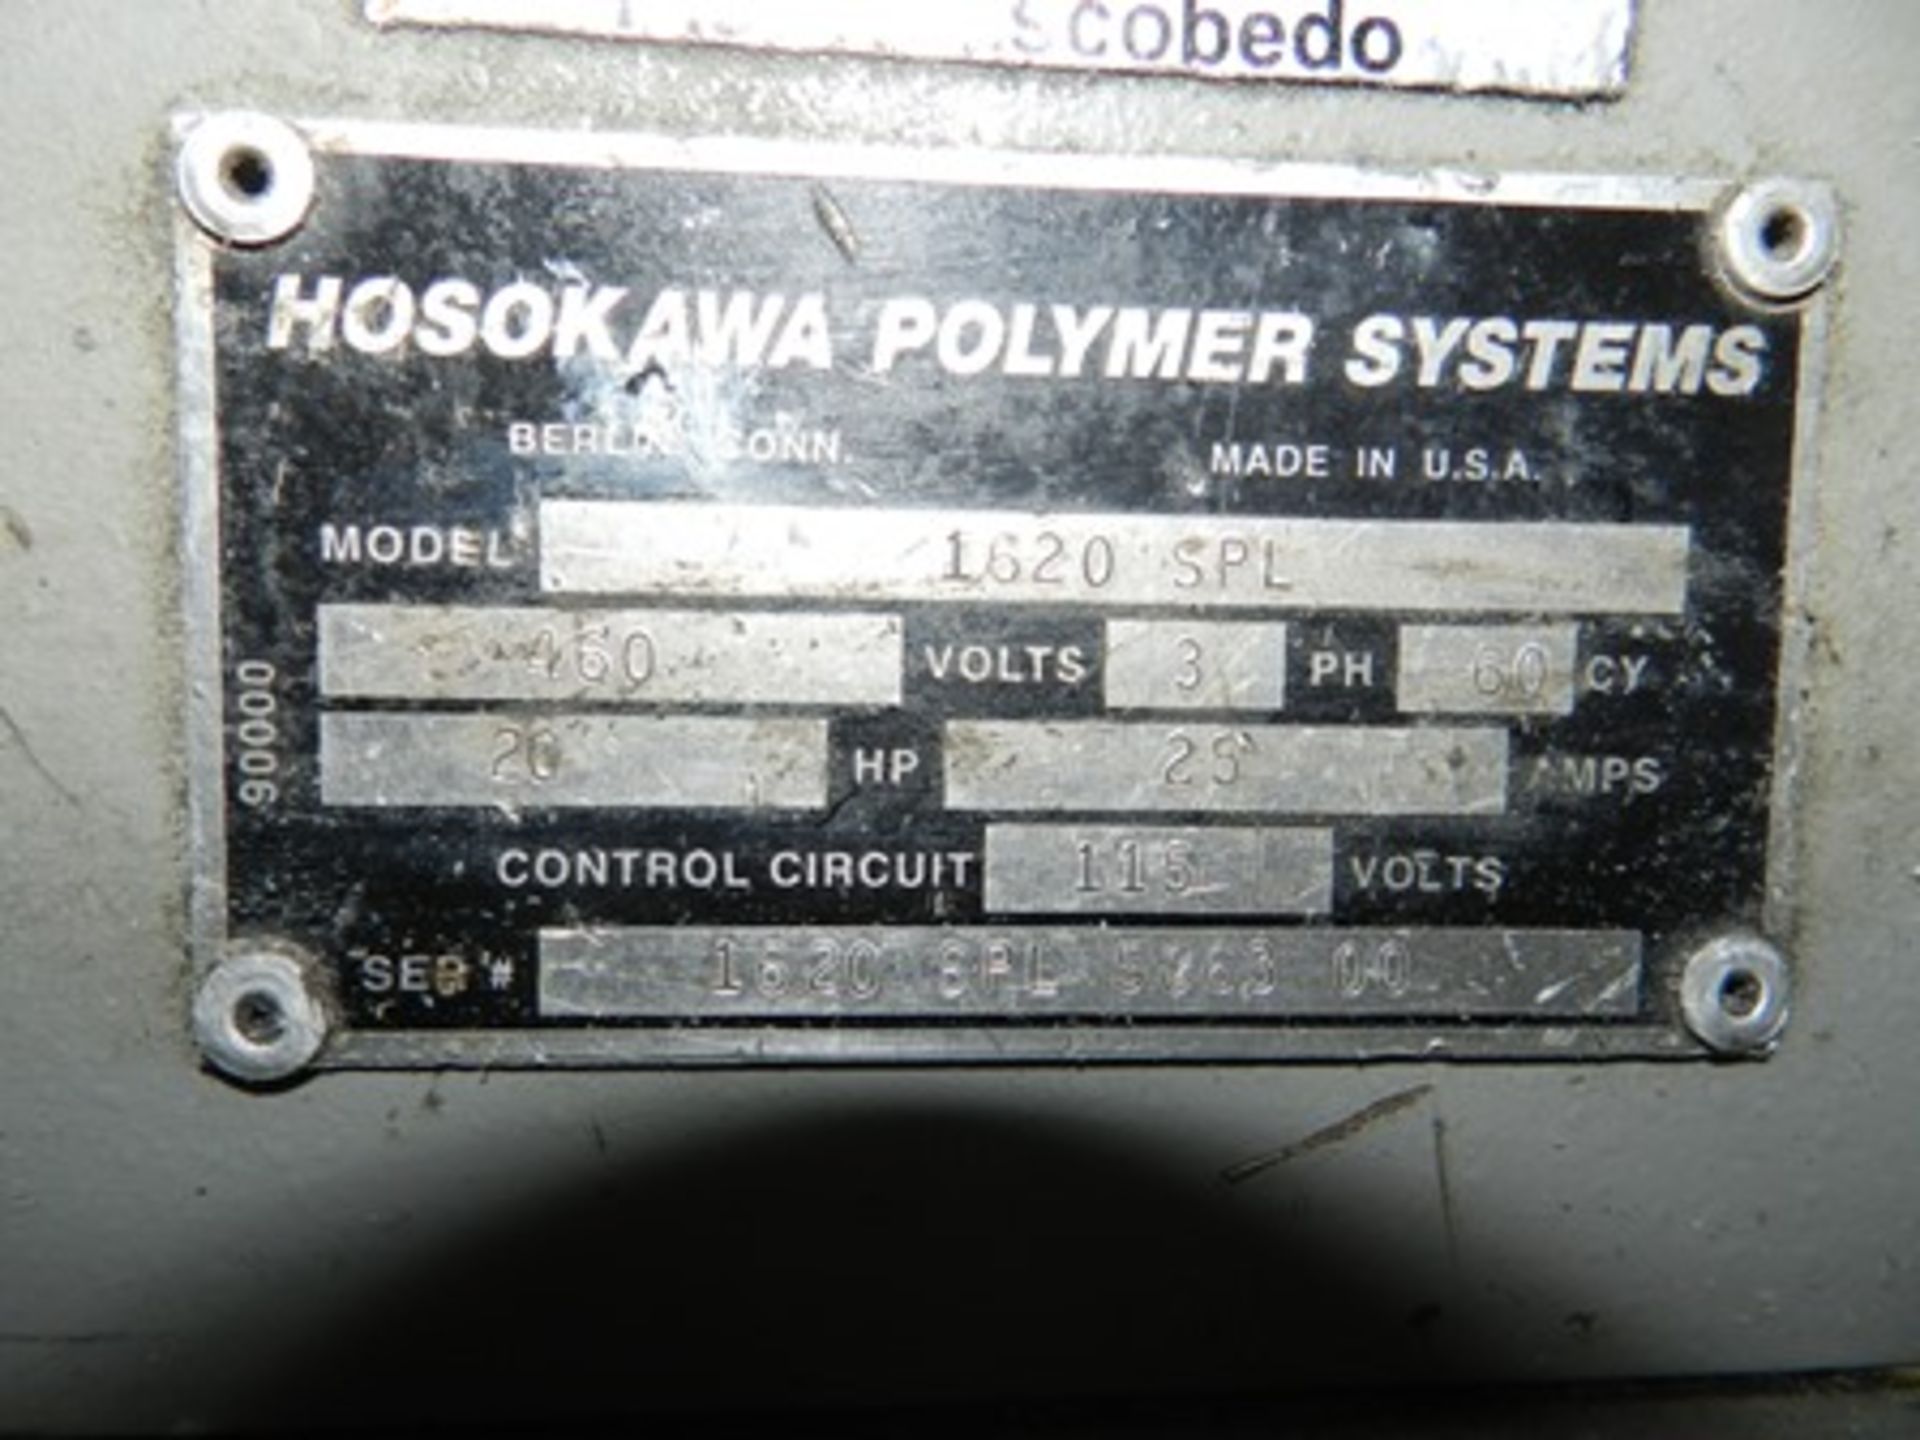 20 HORSEPOWER HOSOKAWA POLYMER SYSTEMS, MODEL 1620SPL SERIE 1620 SPL 586300, BALDOR 460V. ENGINE. - Image 4 of 15